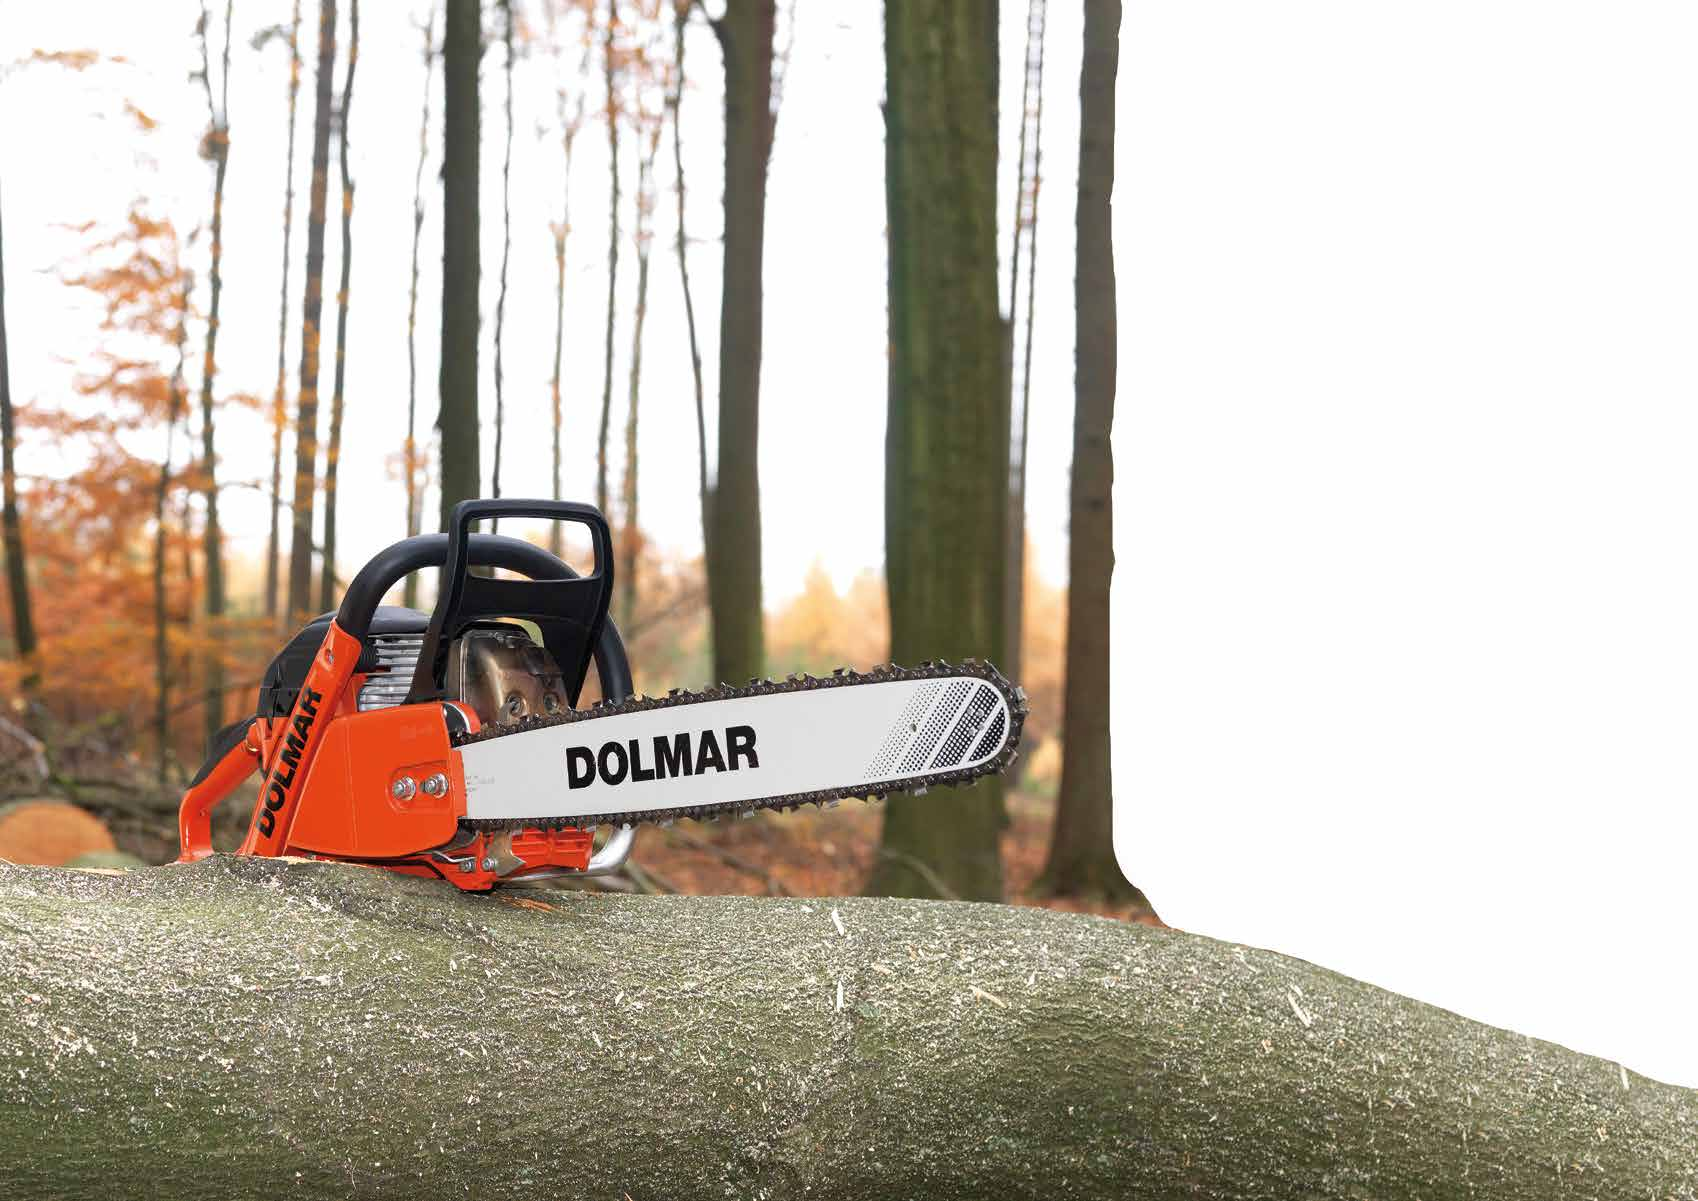 La amplia gama de motosierras Dolmar permite realizar desde trabajos de poda hasta los trabajos de tala más exigentes.